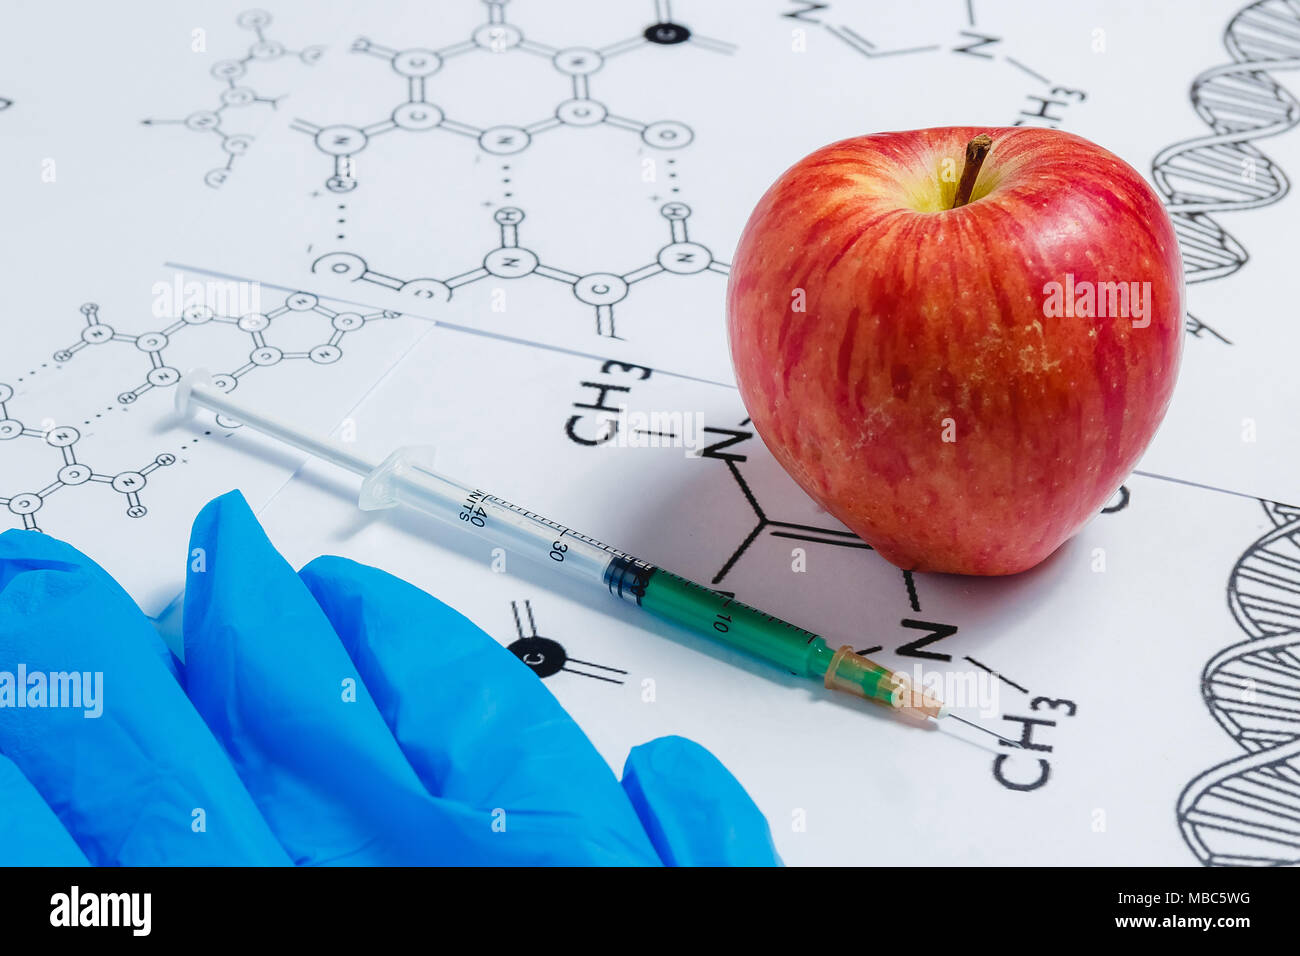 Concetto di Non-prodotti naturali, ogm. Siringa, guanti blu e rosso Apple su sfondo bianco con formula chimica Foto Stock